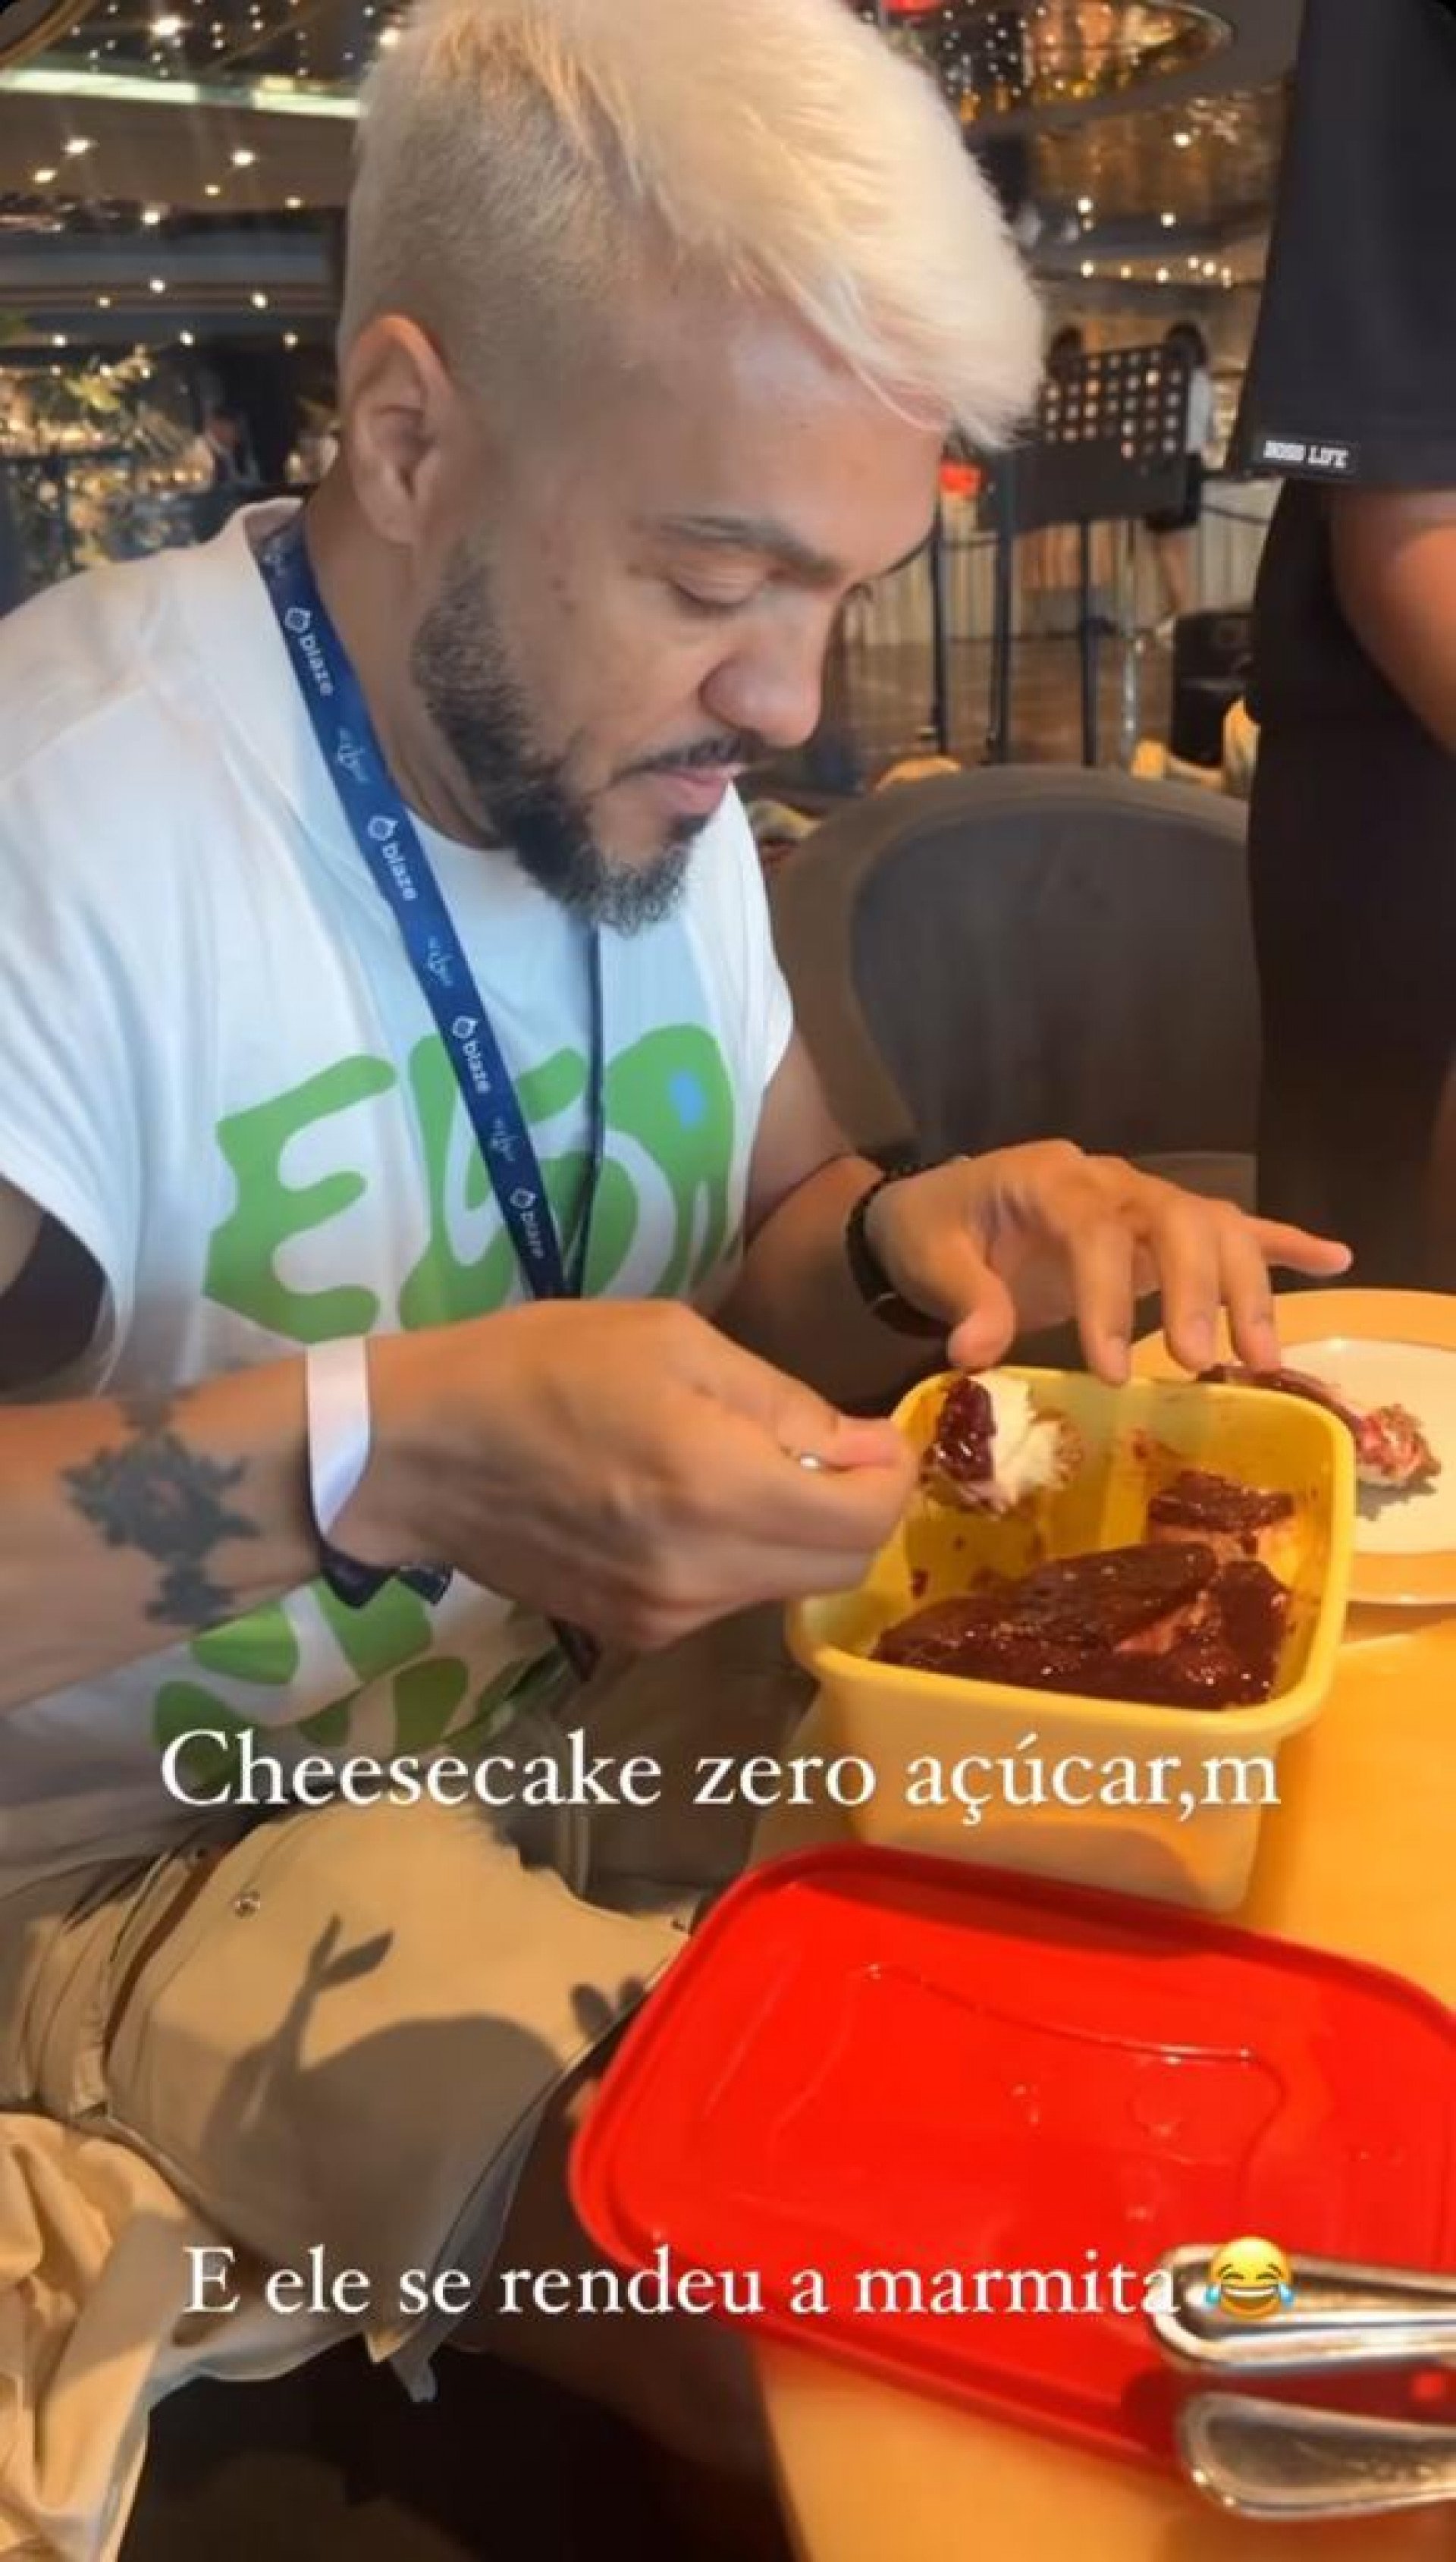 Belo comendo marmita no cruzeiro de Neymar - Reprodução/Instagra,